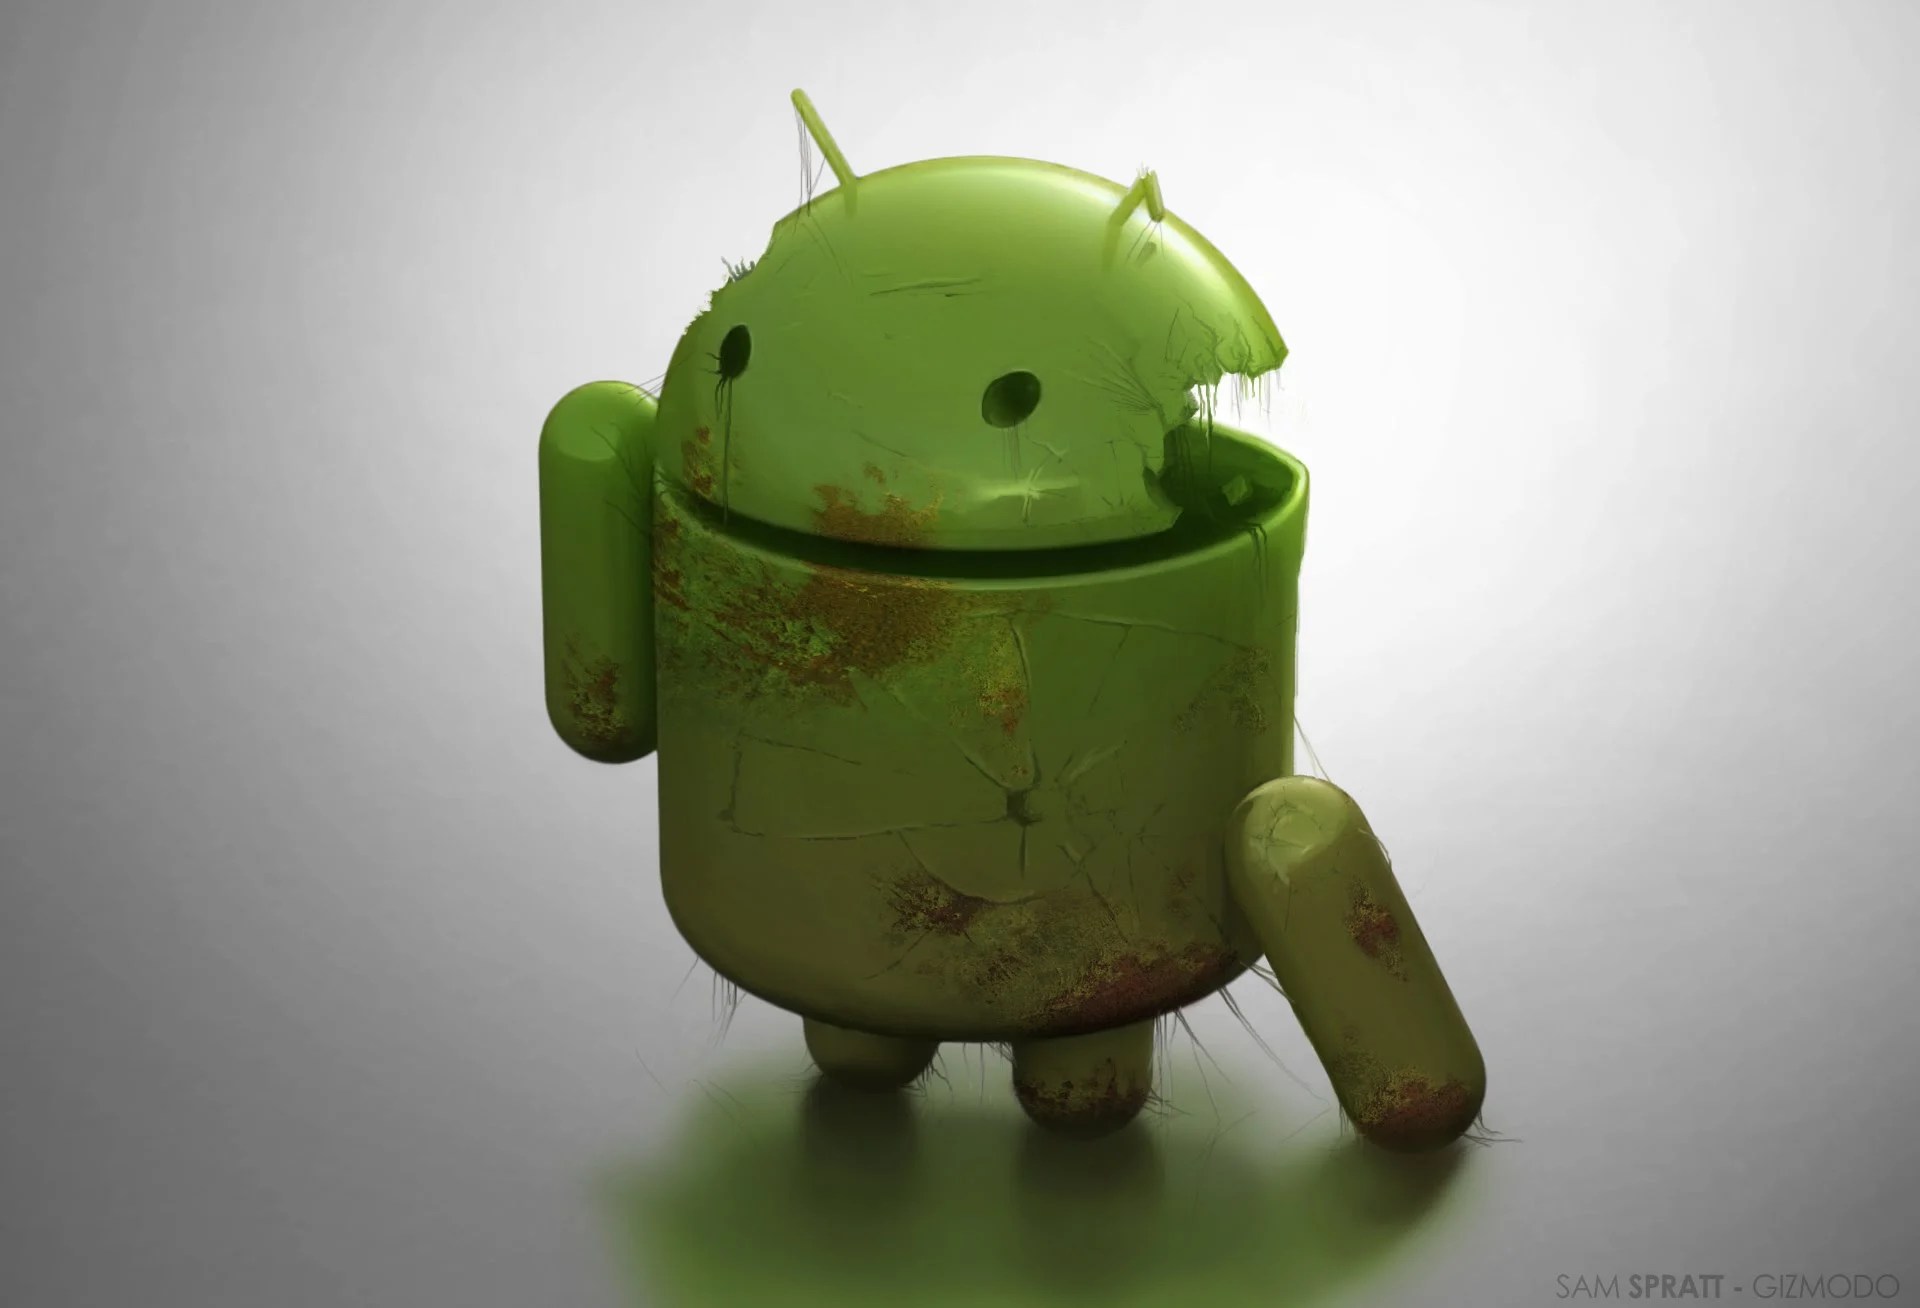 40 % des applications Android risquent de mettre en danger vos données